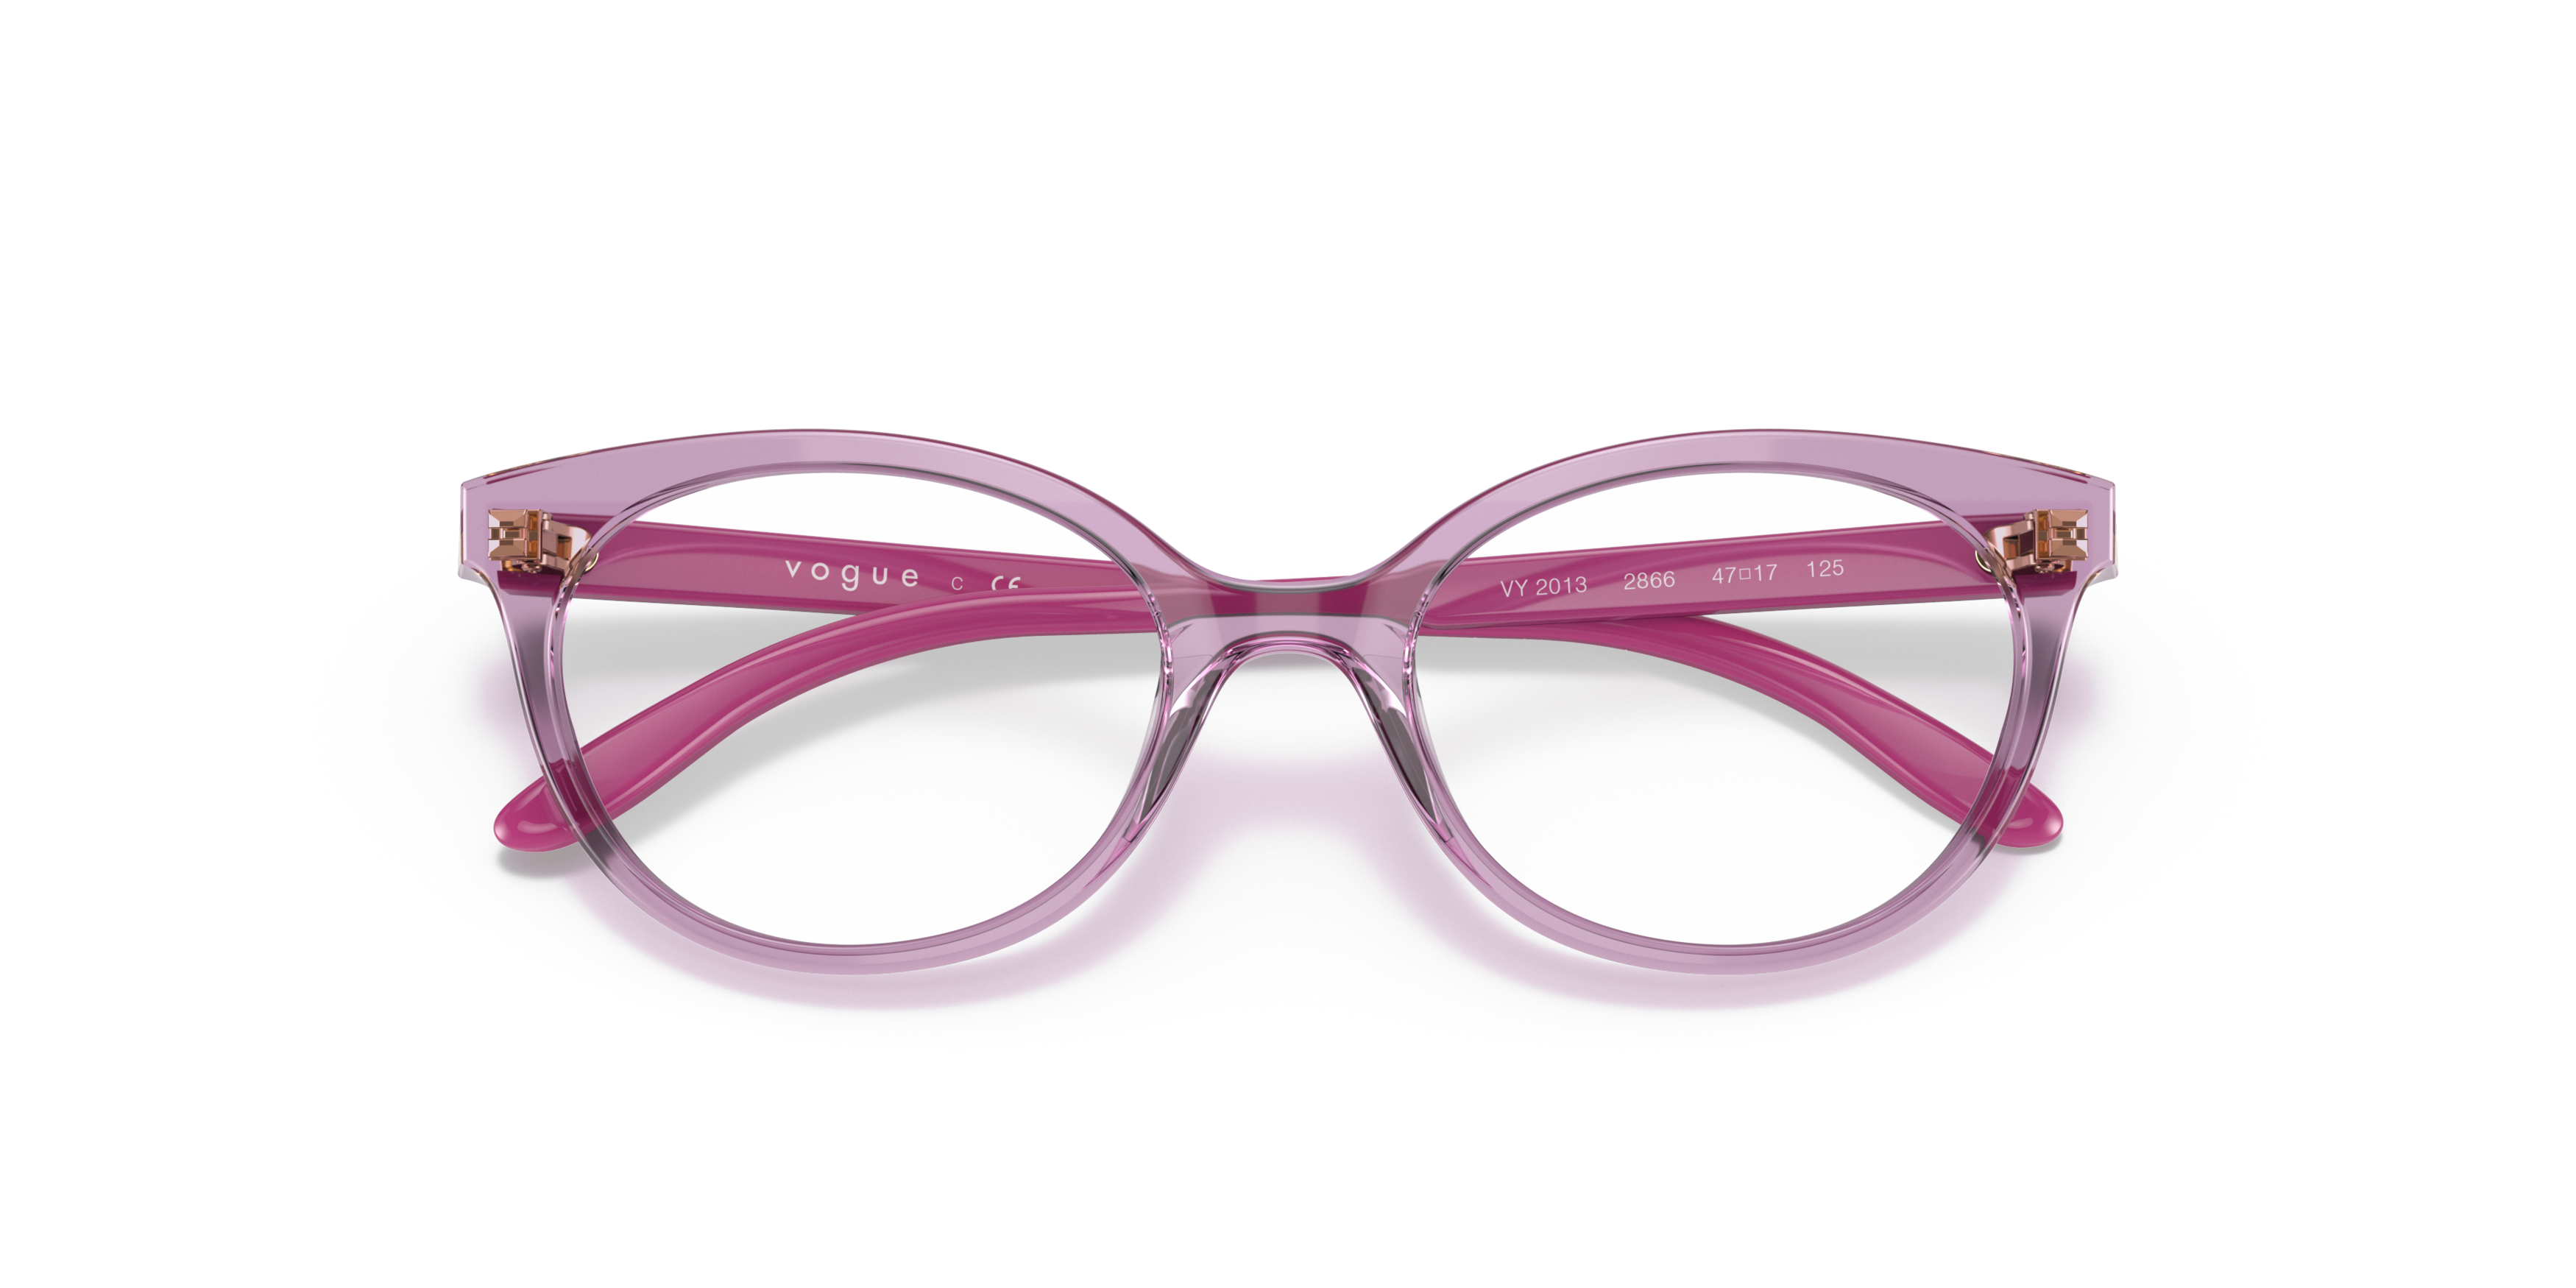 Folded Vogue VY 2013 Children's Glasses Transparent / Transparent, Pink